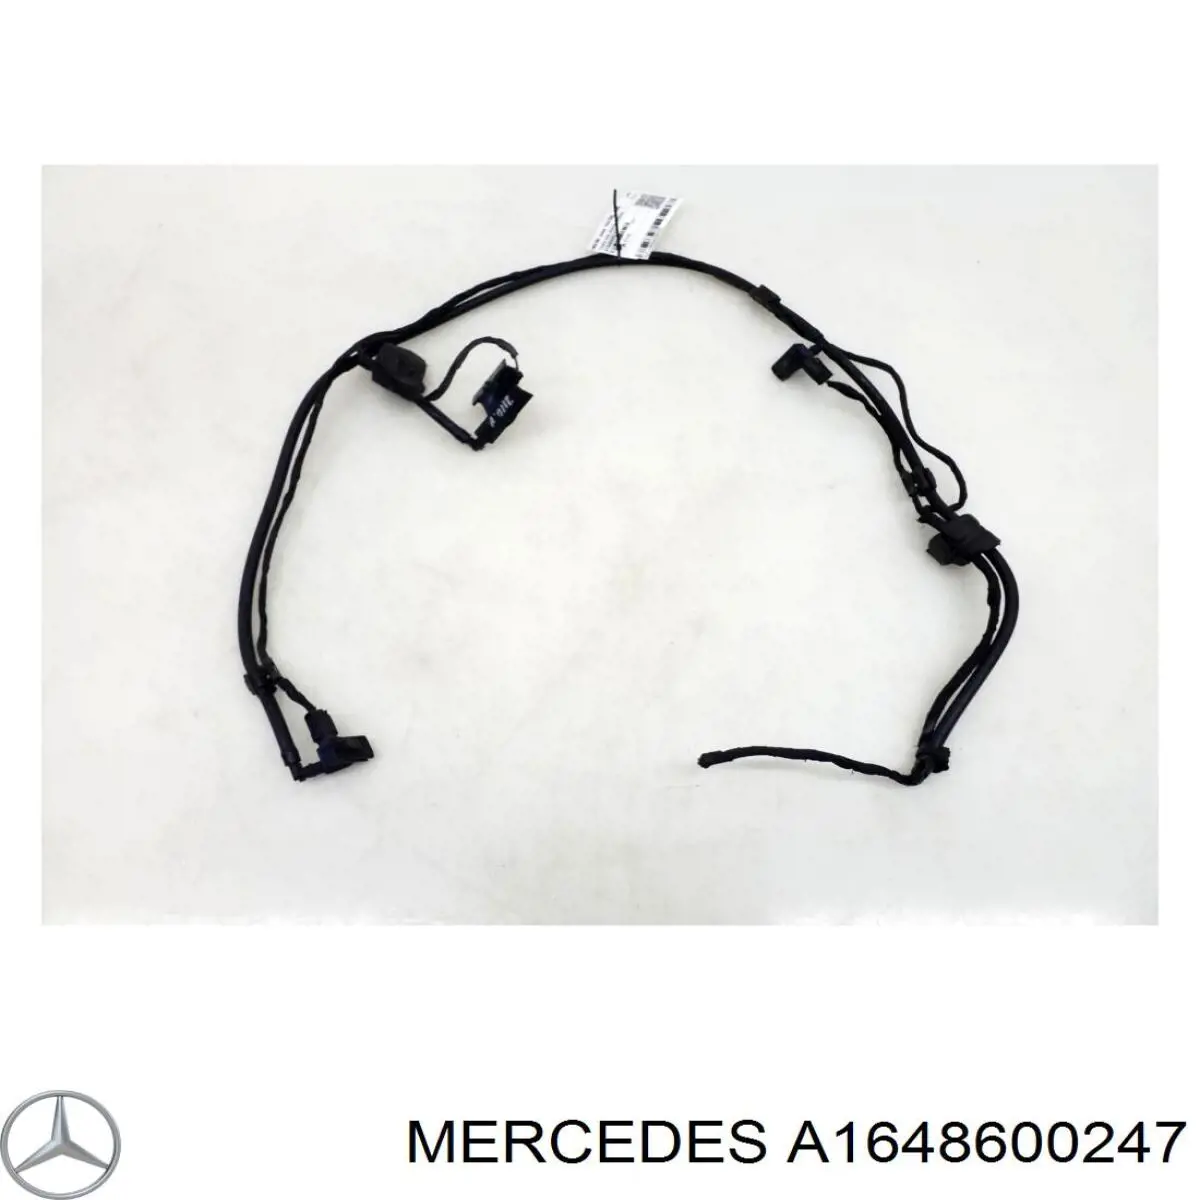 Injetor direito de fluido para lavador de pára-brisas para Mercedes GL (X164)